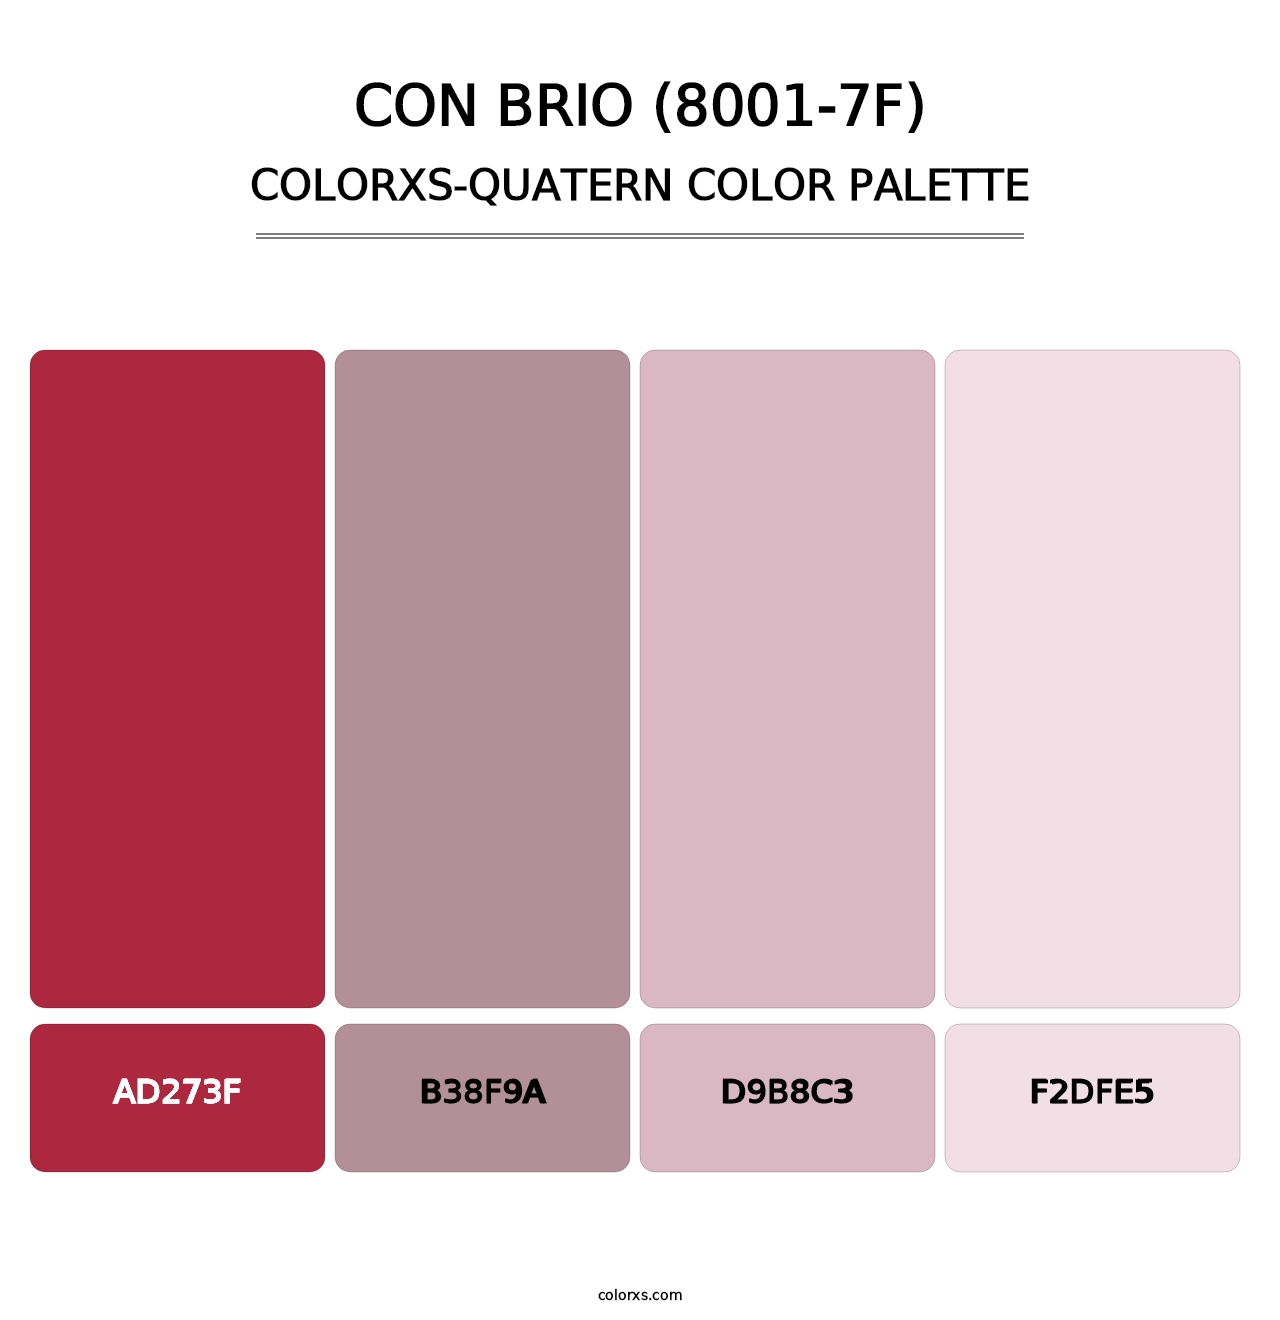 Con Brio (8001-7F) - Colorxs Quatern Palette